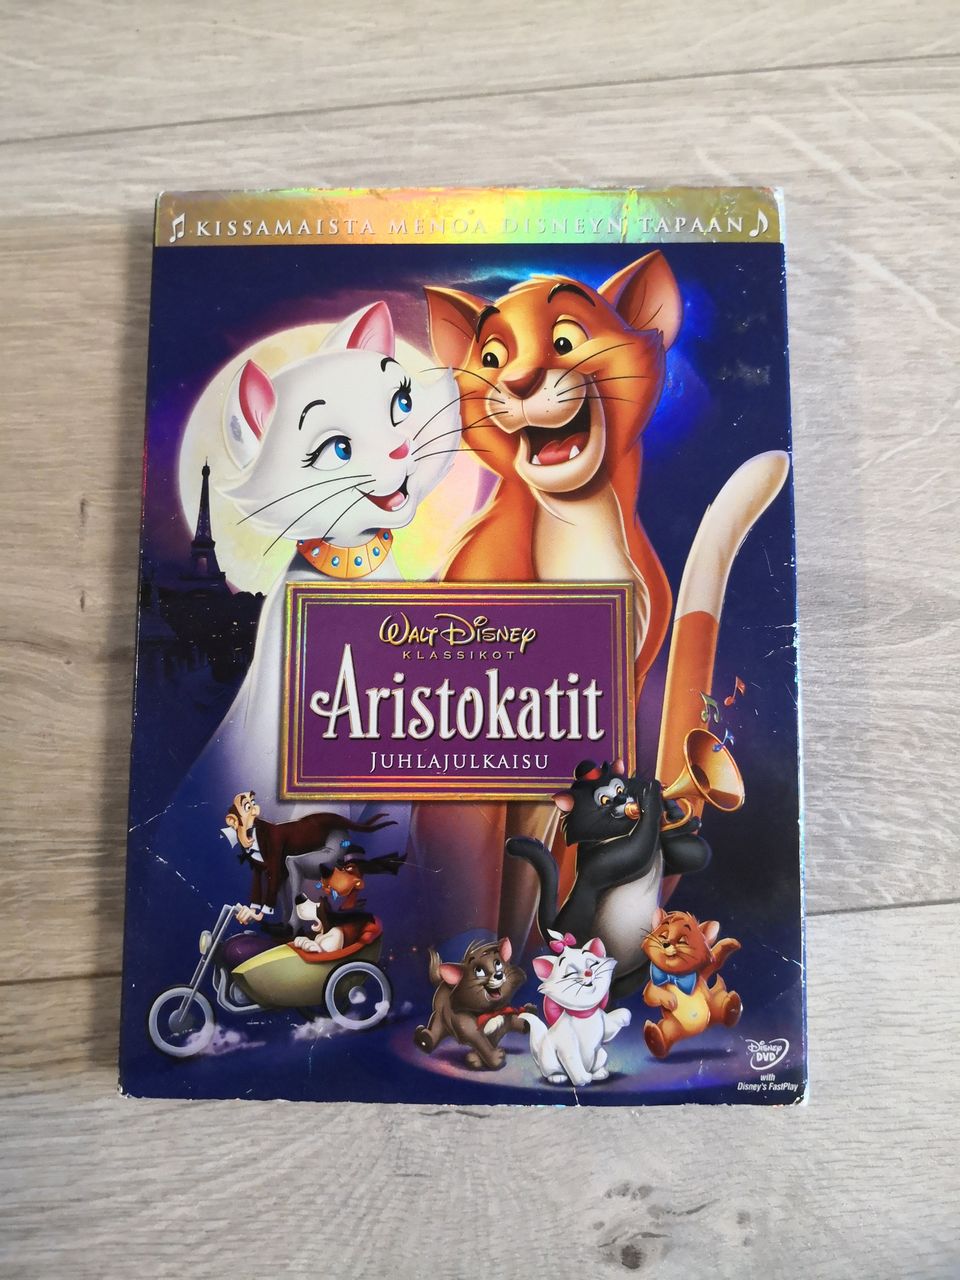 Disneyn Aristokatit juhlajulkaisu DVD